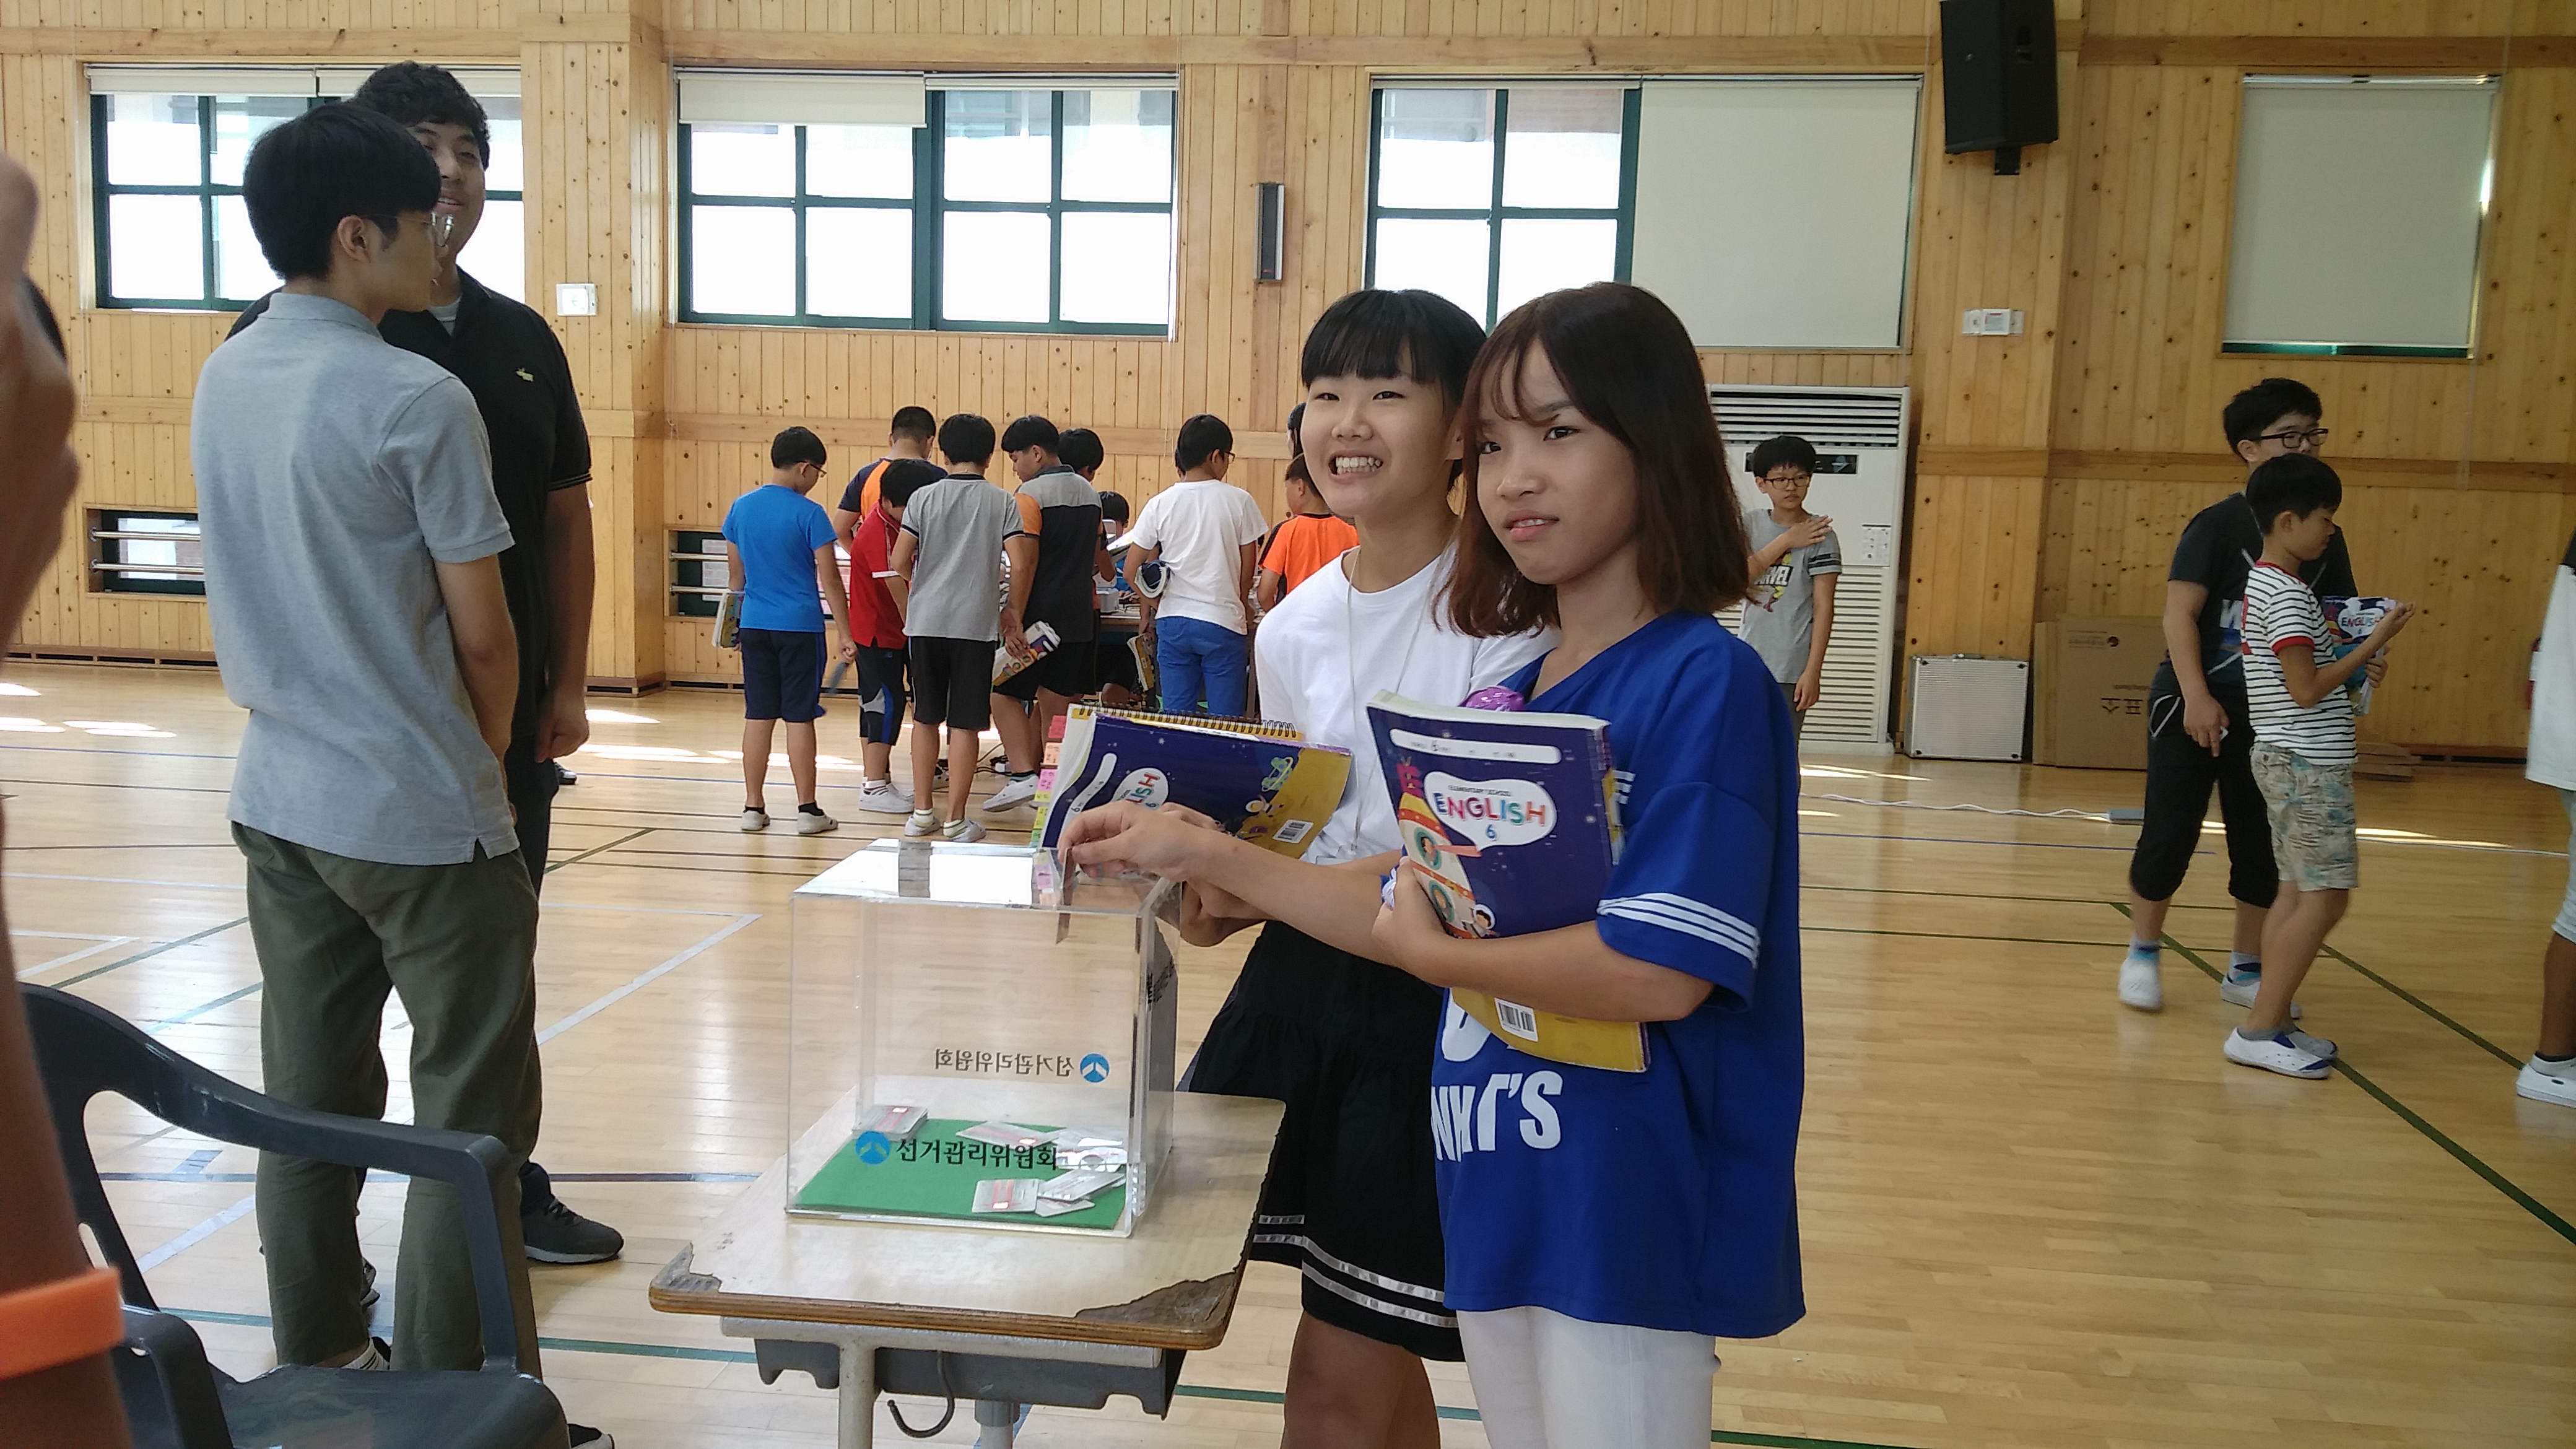 투표를 마치고 선거권 카드를 회수함에 넣고 있는 두 여학생의 모습